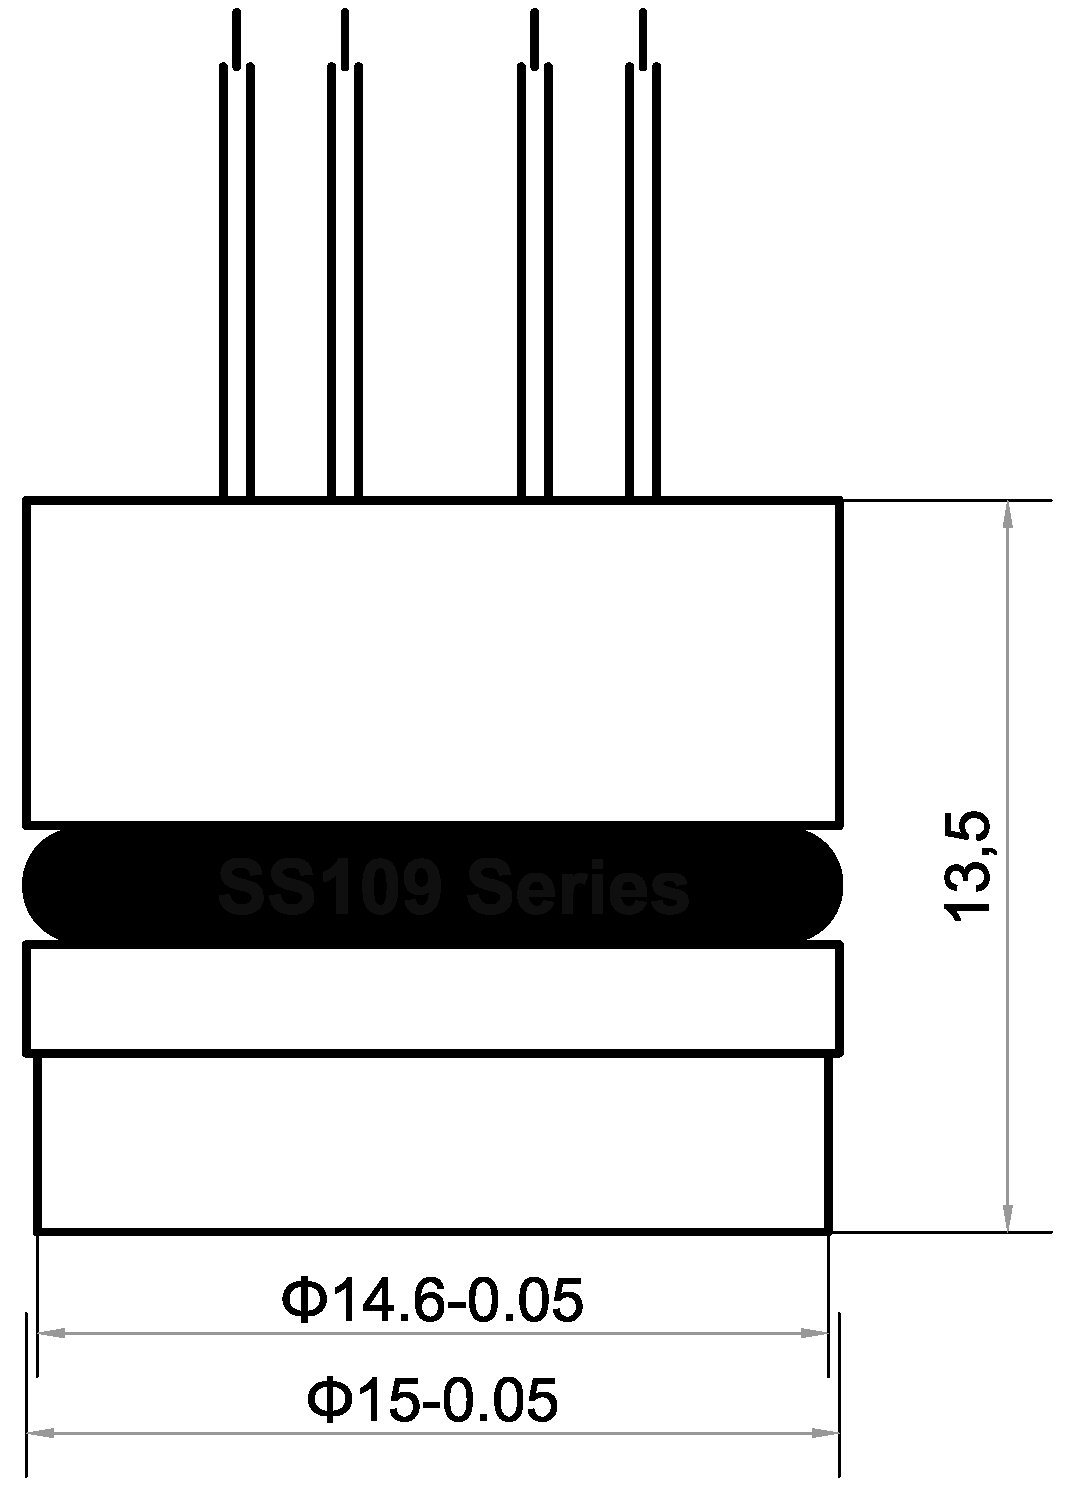 SS109 series piezoresistive capsule